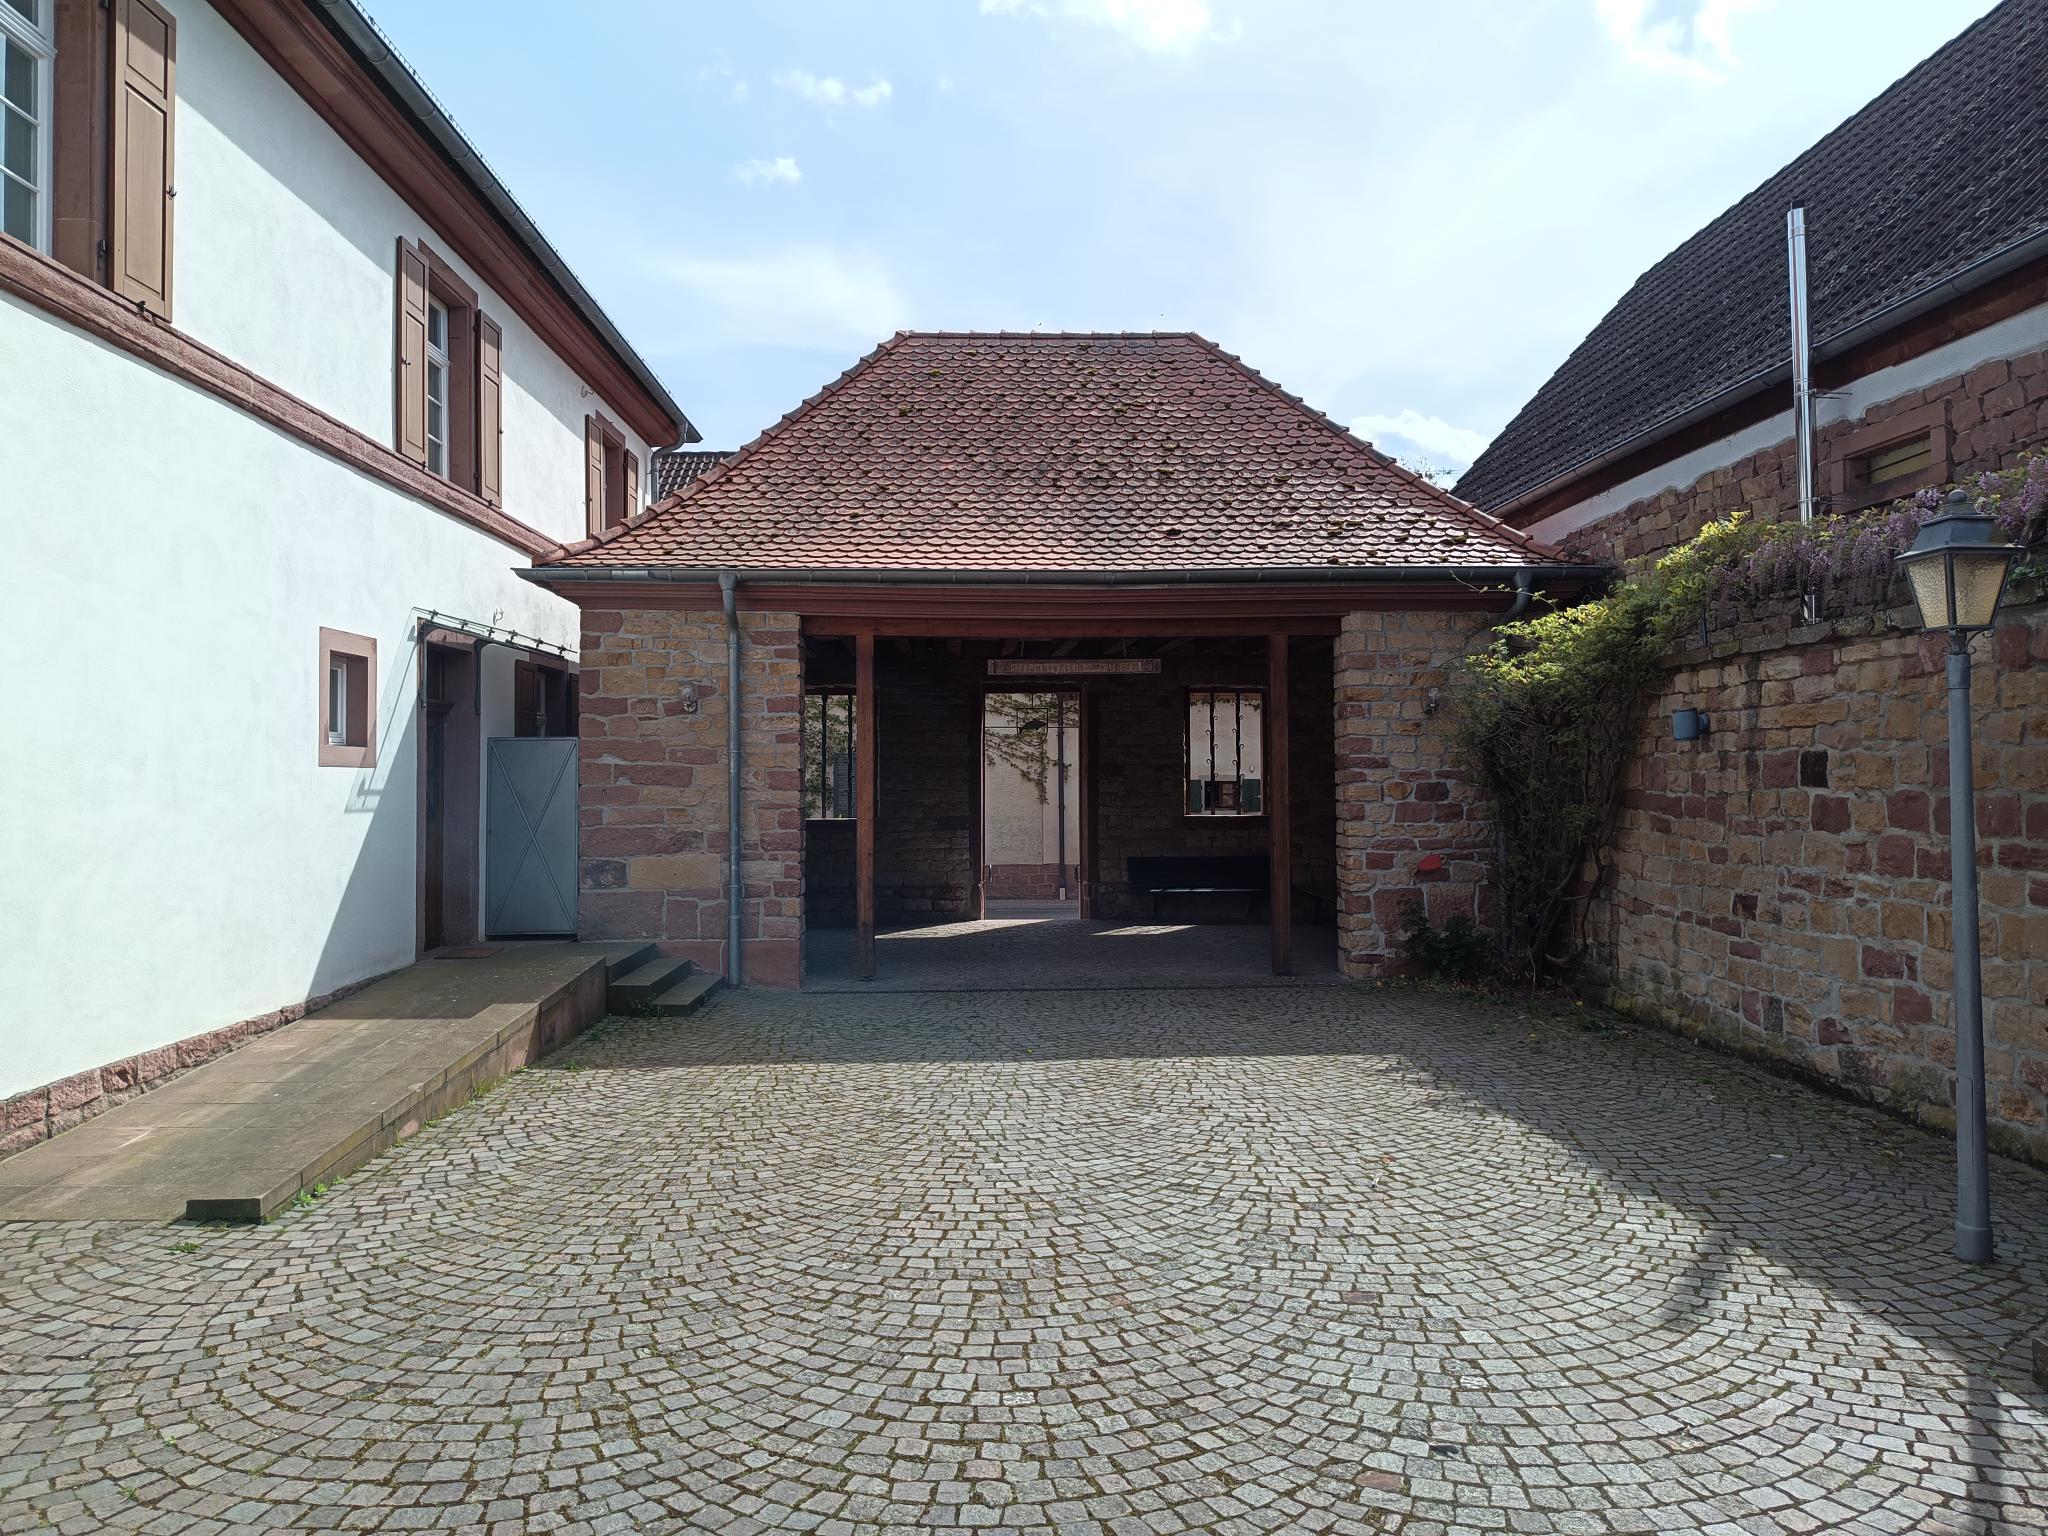 Datei:Dorfgemeinschaftshaus Kleinfischlingen 2.jpeg